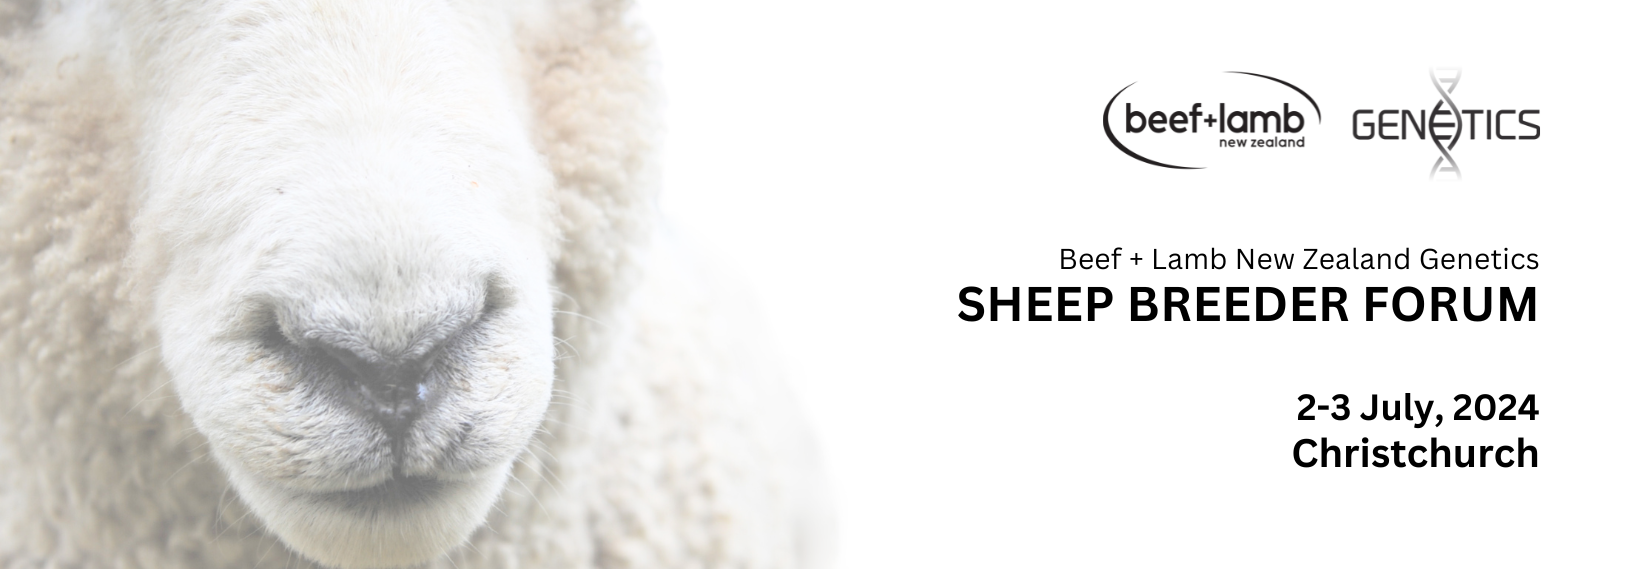 Sheep Breeder Forum 2024